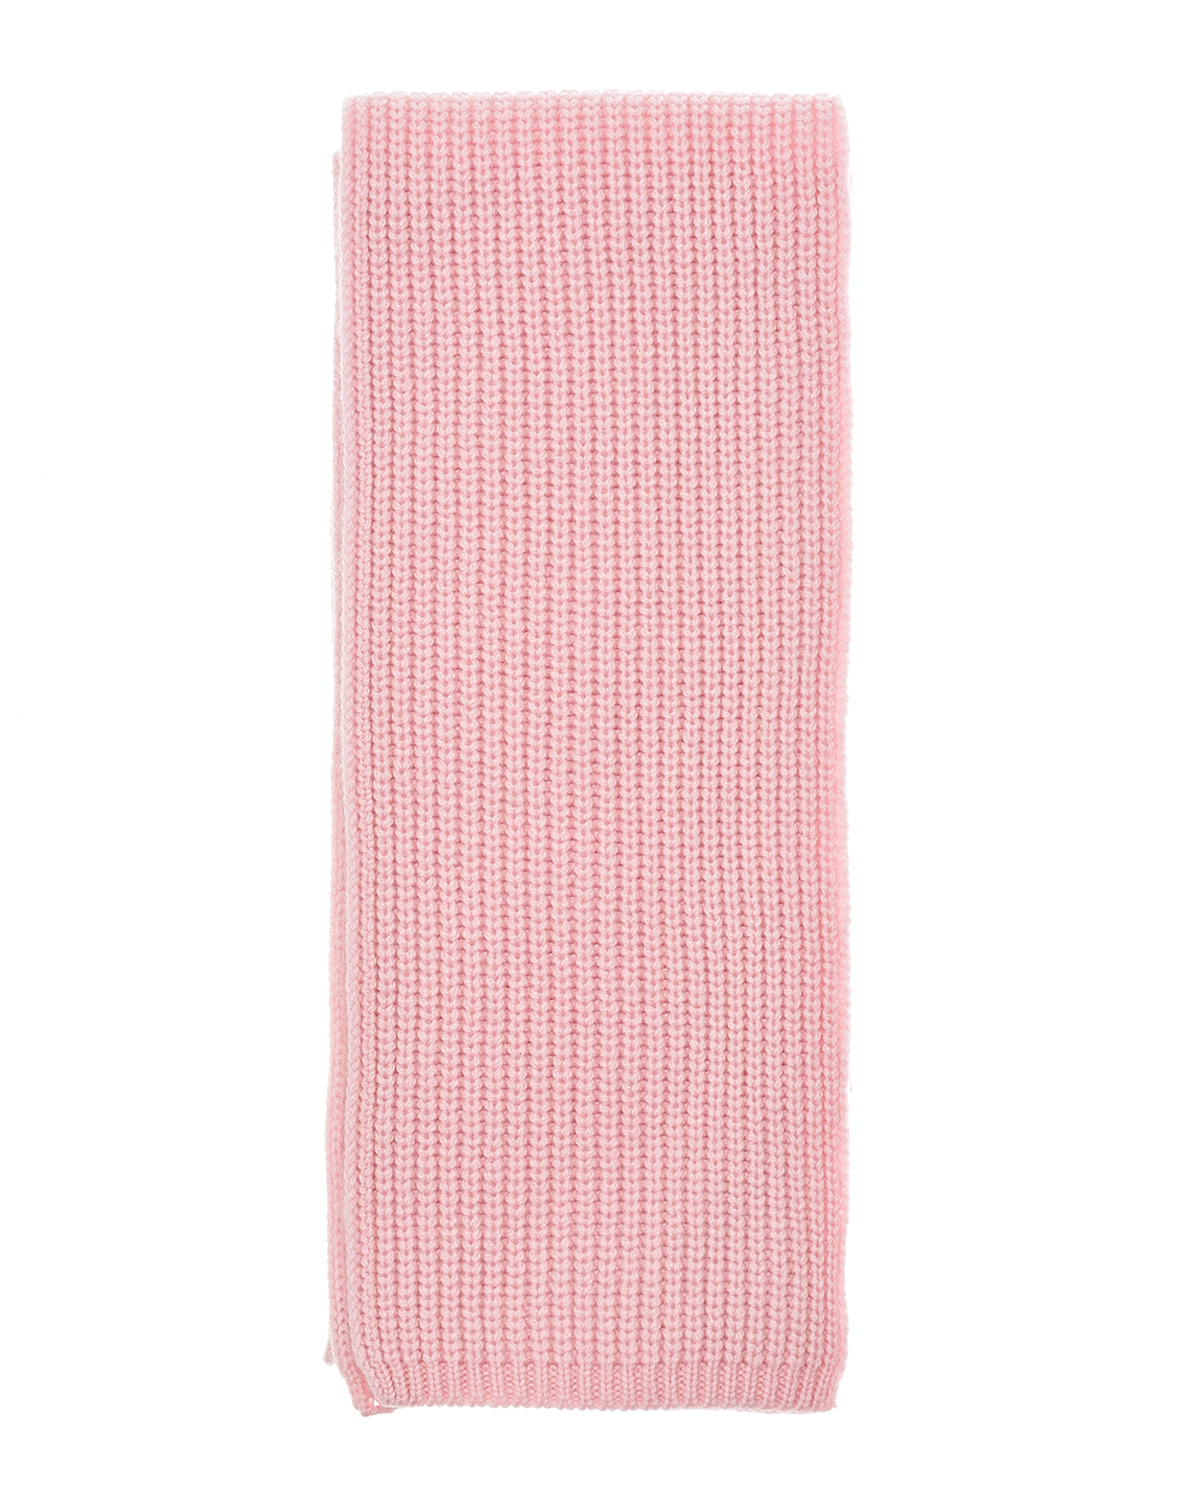 Розовый шарф из кашемира, 160x16 см Yves Salomon детский, размер unica - фото 2